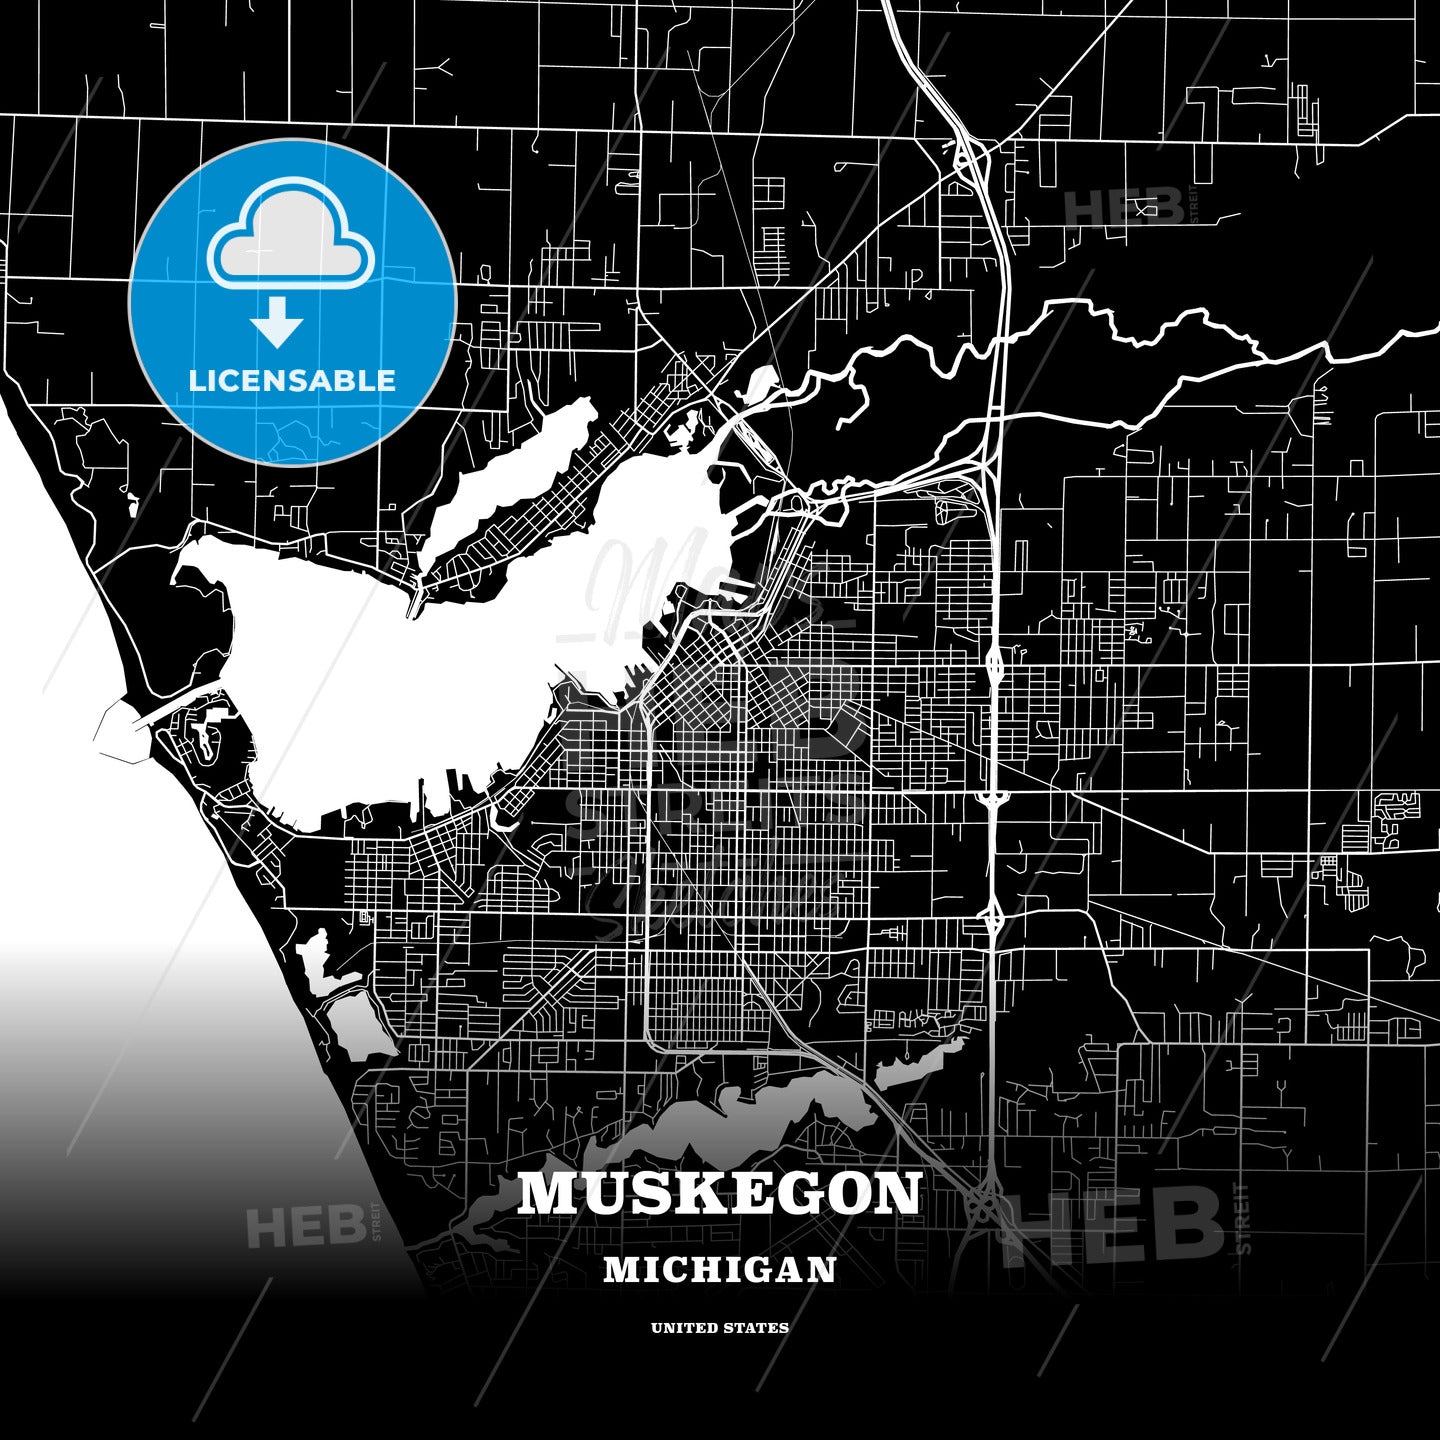 Muskegon, Michigan, USA map